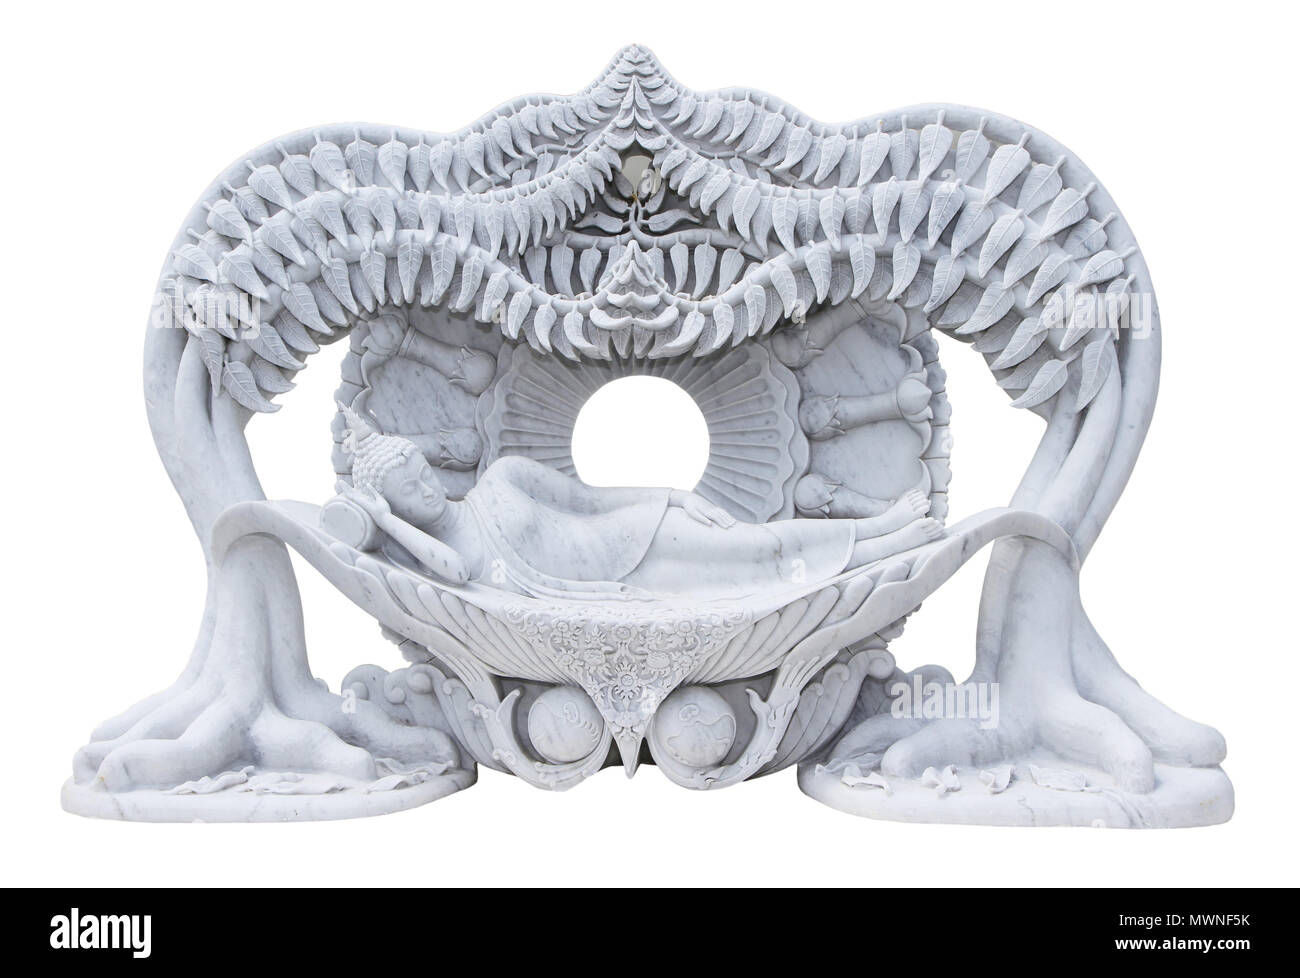 Statue en marbre de la bouddha couché isolé sur fond blanc Banque D'Images